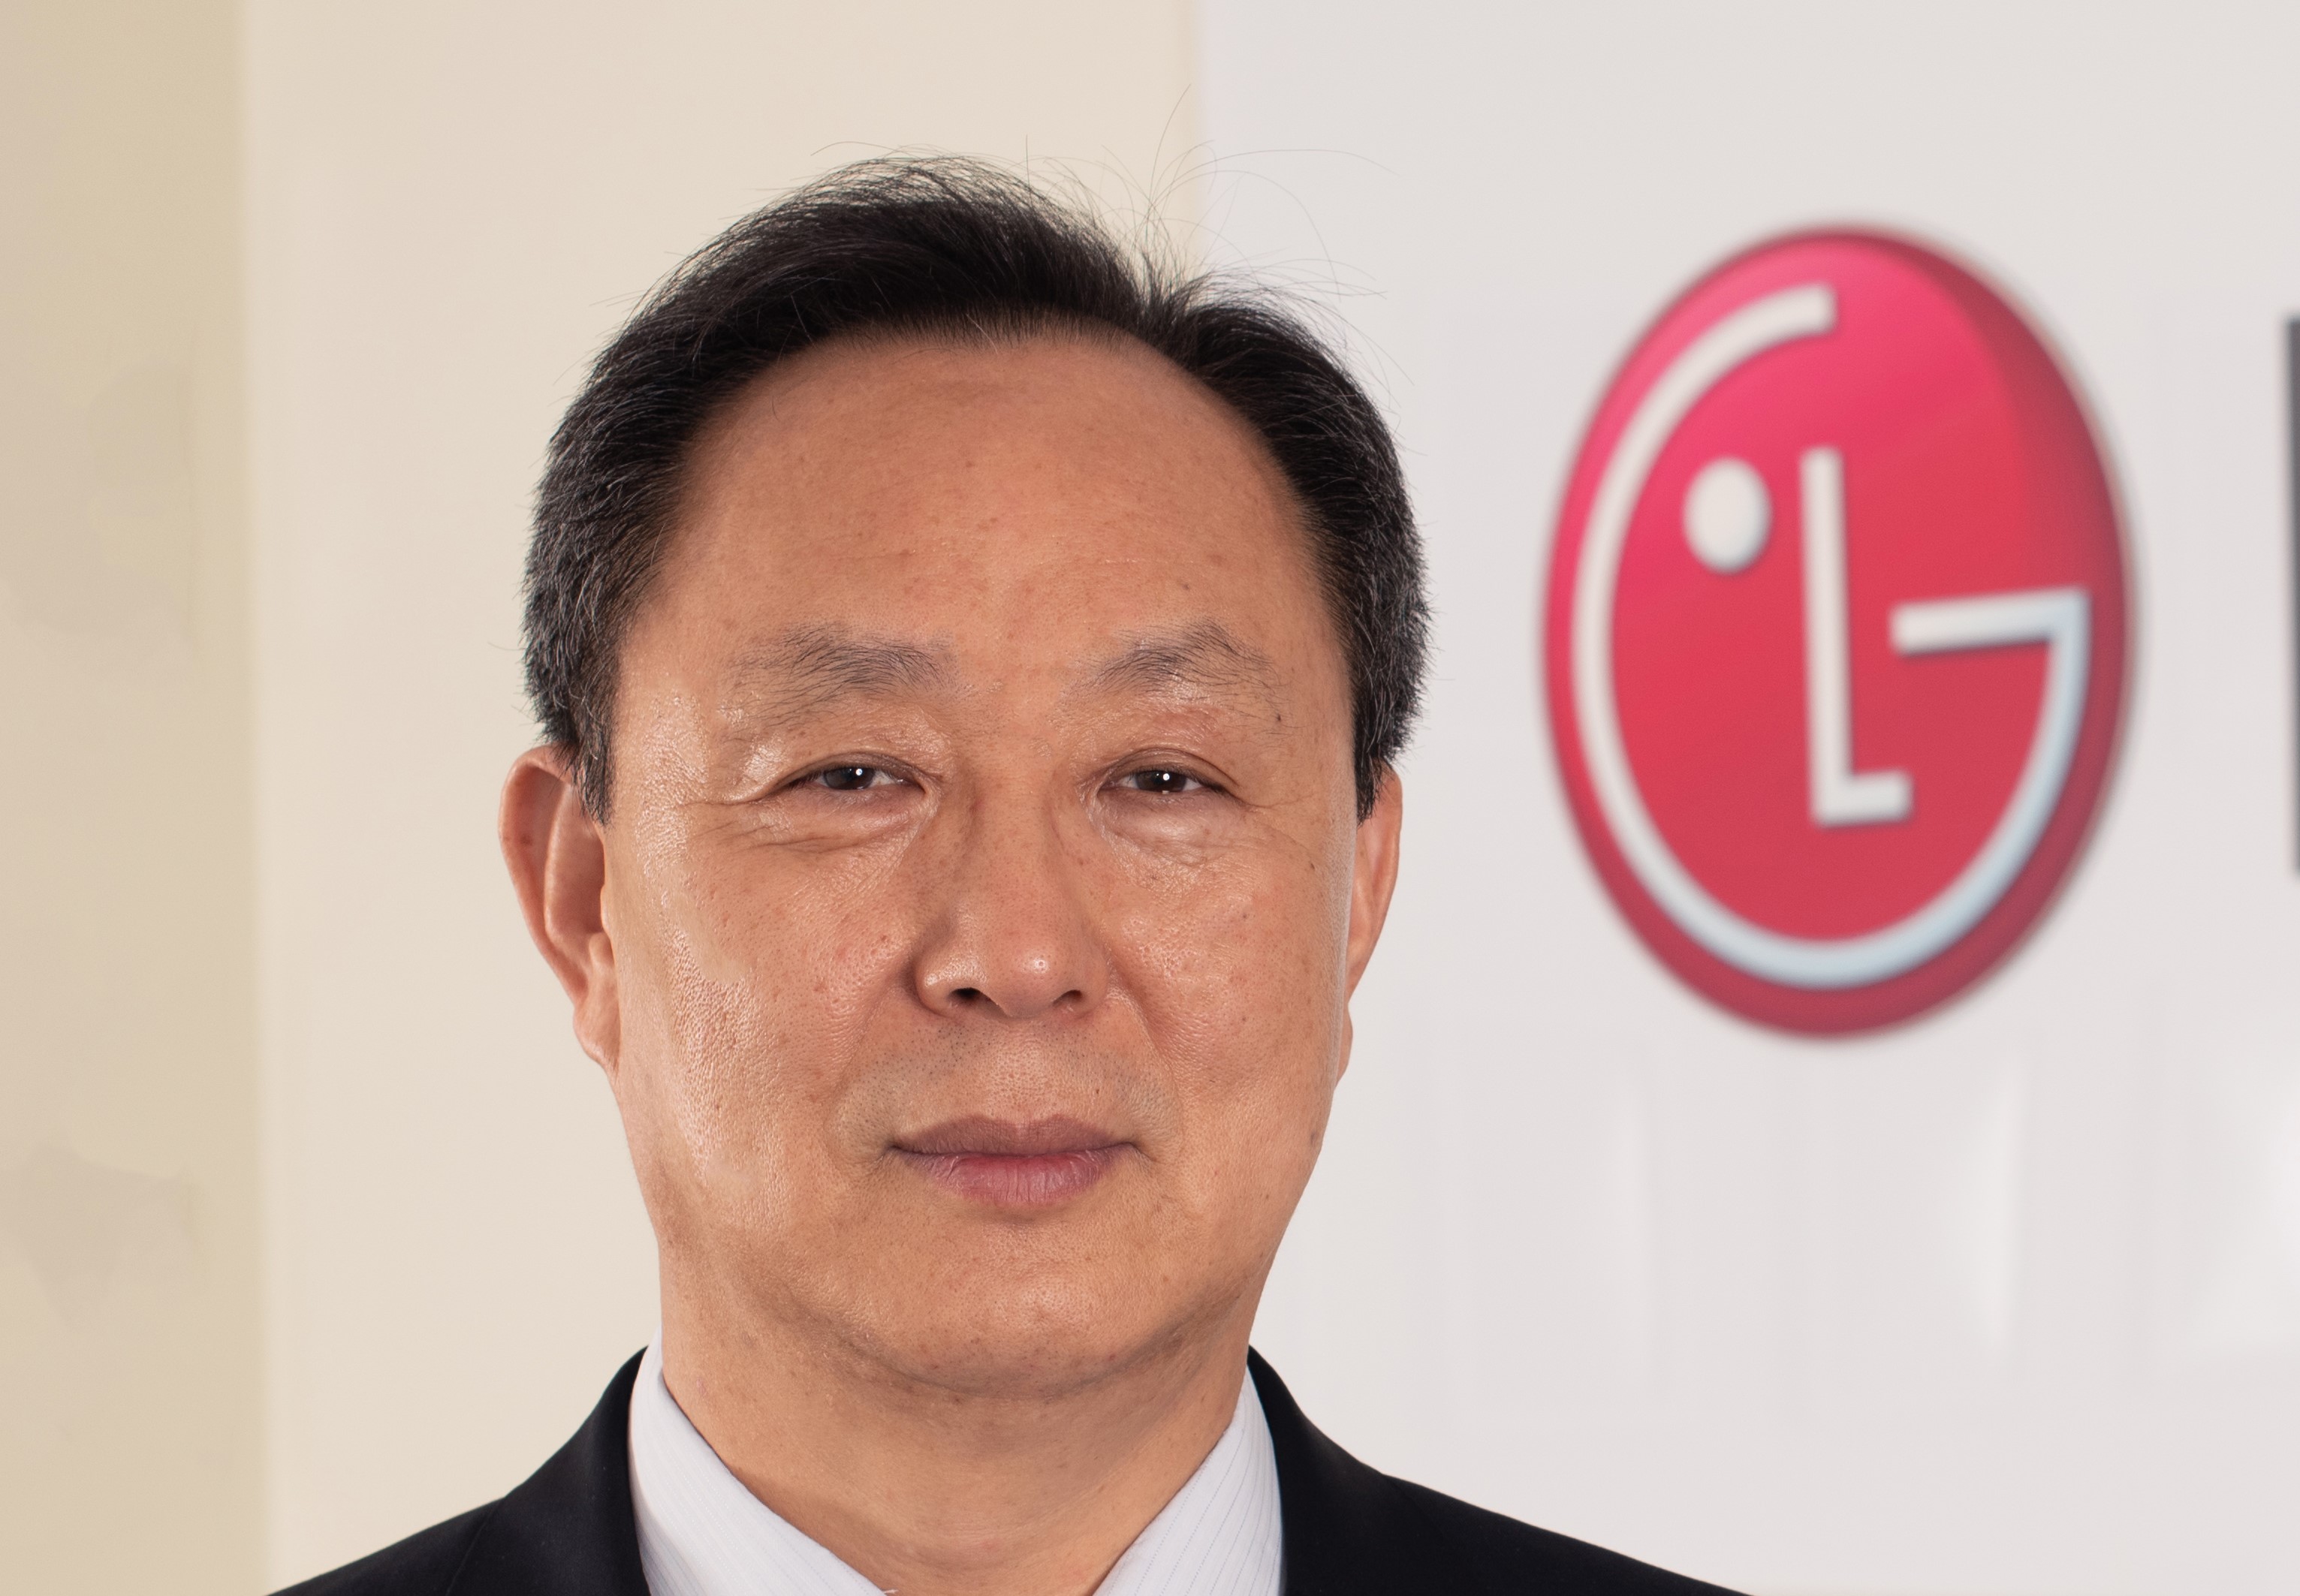 LG Türkiye’ye yeni ülke başkanı:Jeff Cheh